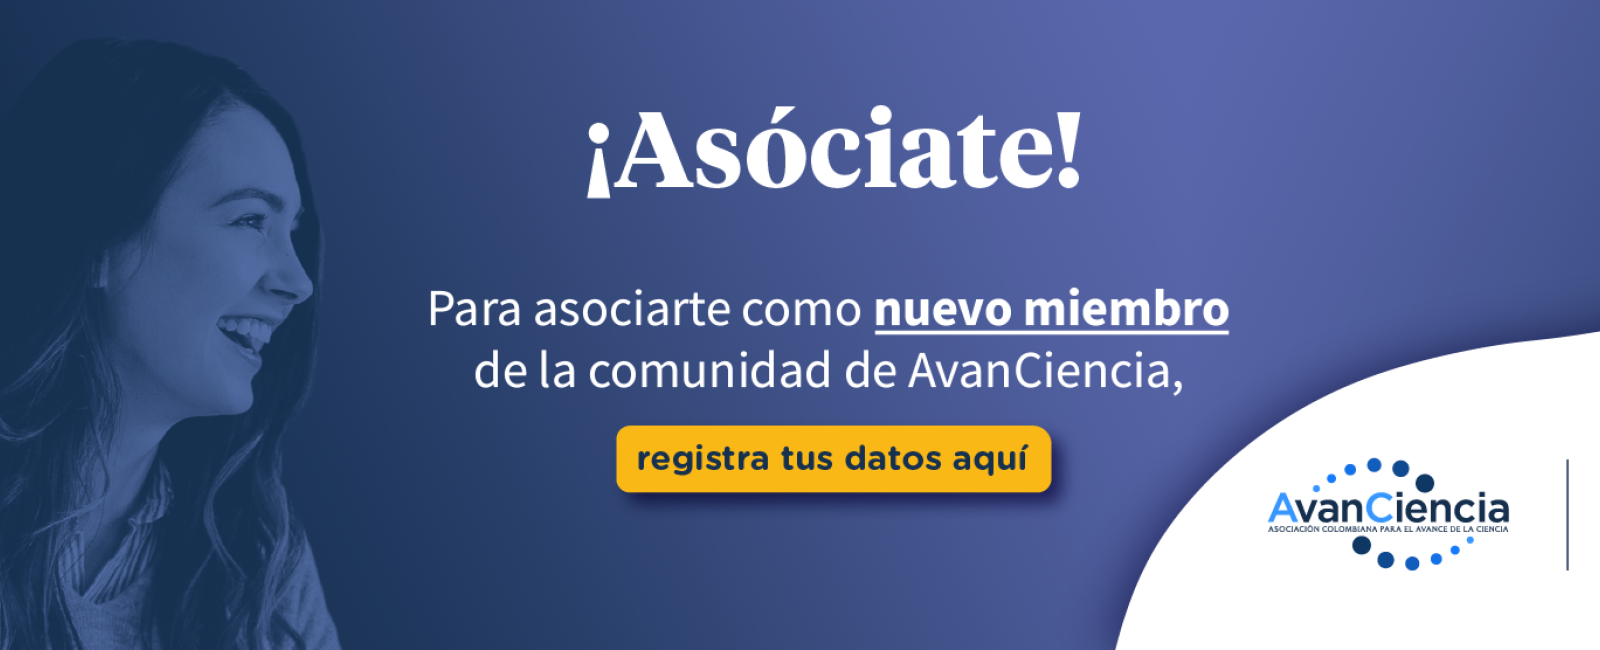 Asóciate como nuevo miembro de AvanCiencia